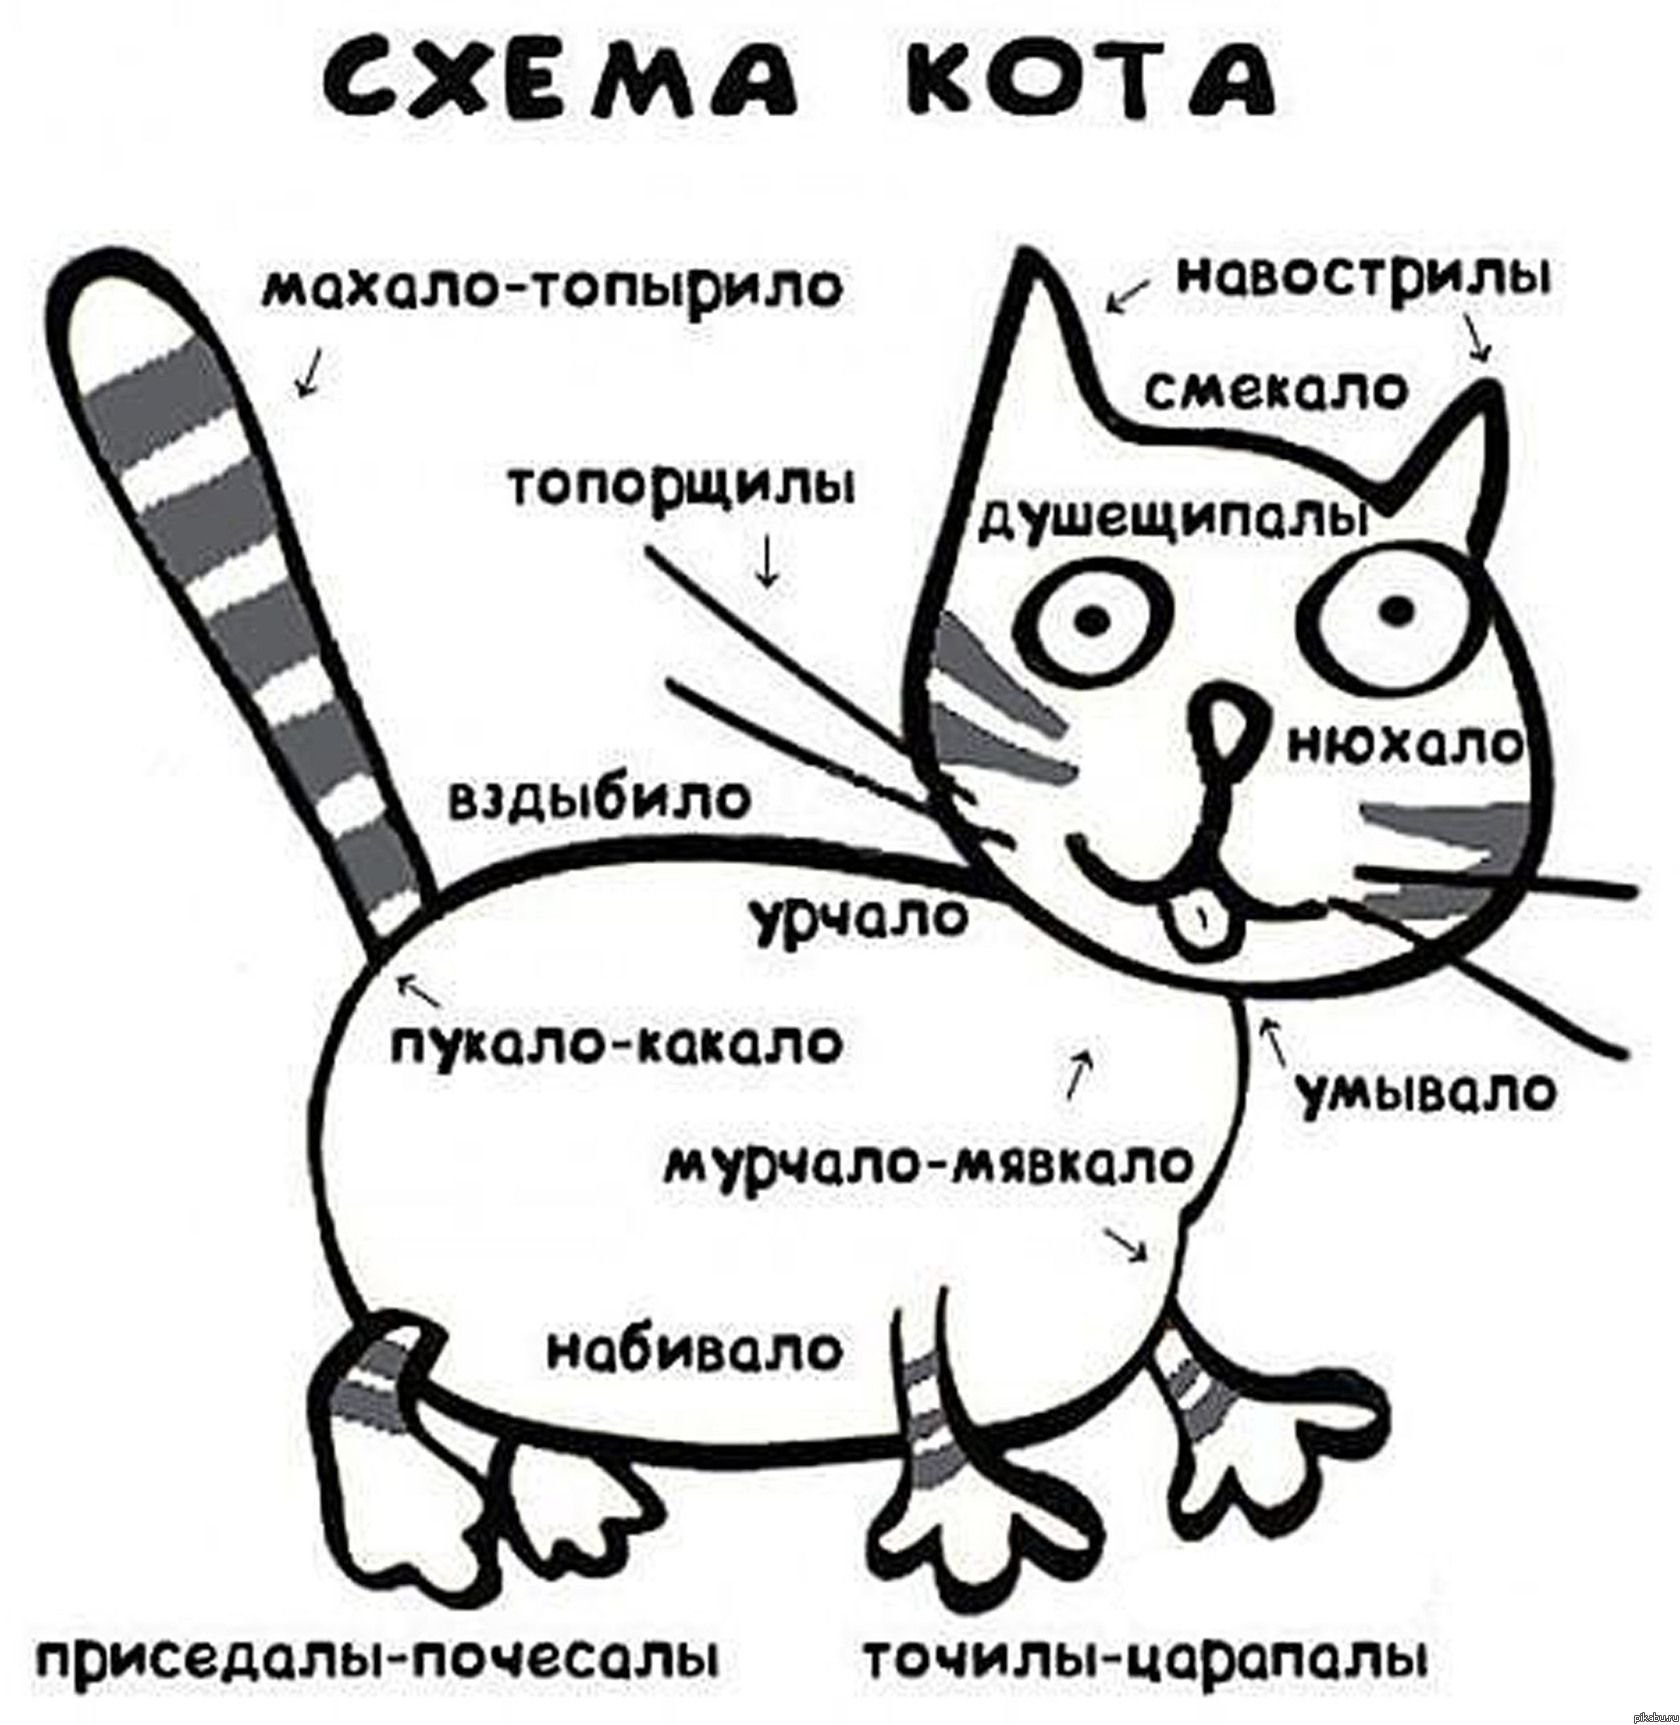 Включи кота называется. Схема кота. Принципиальная схема кота. Шуточная схема кота. Схема кота мурчало.